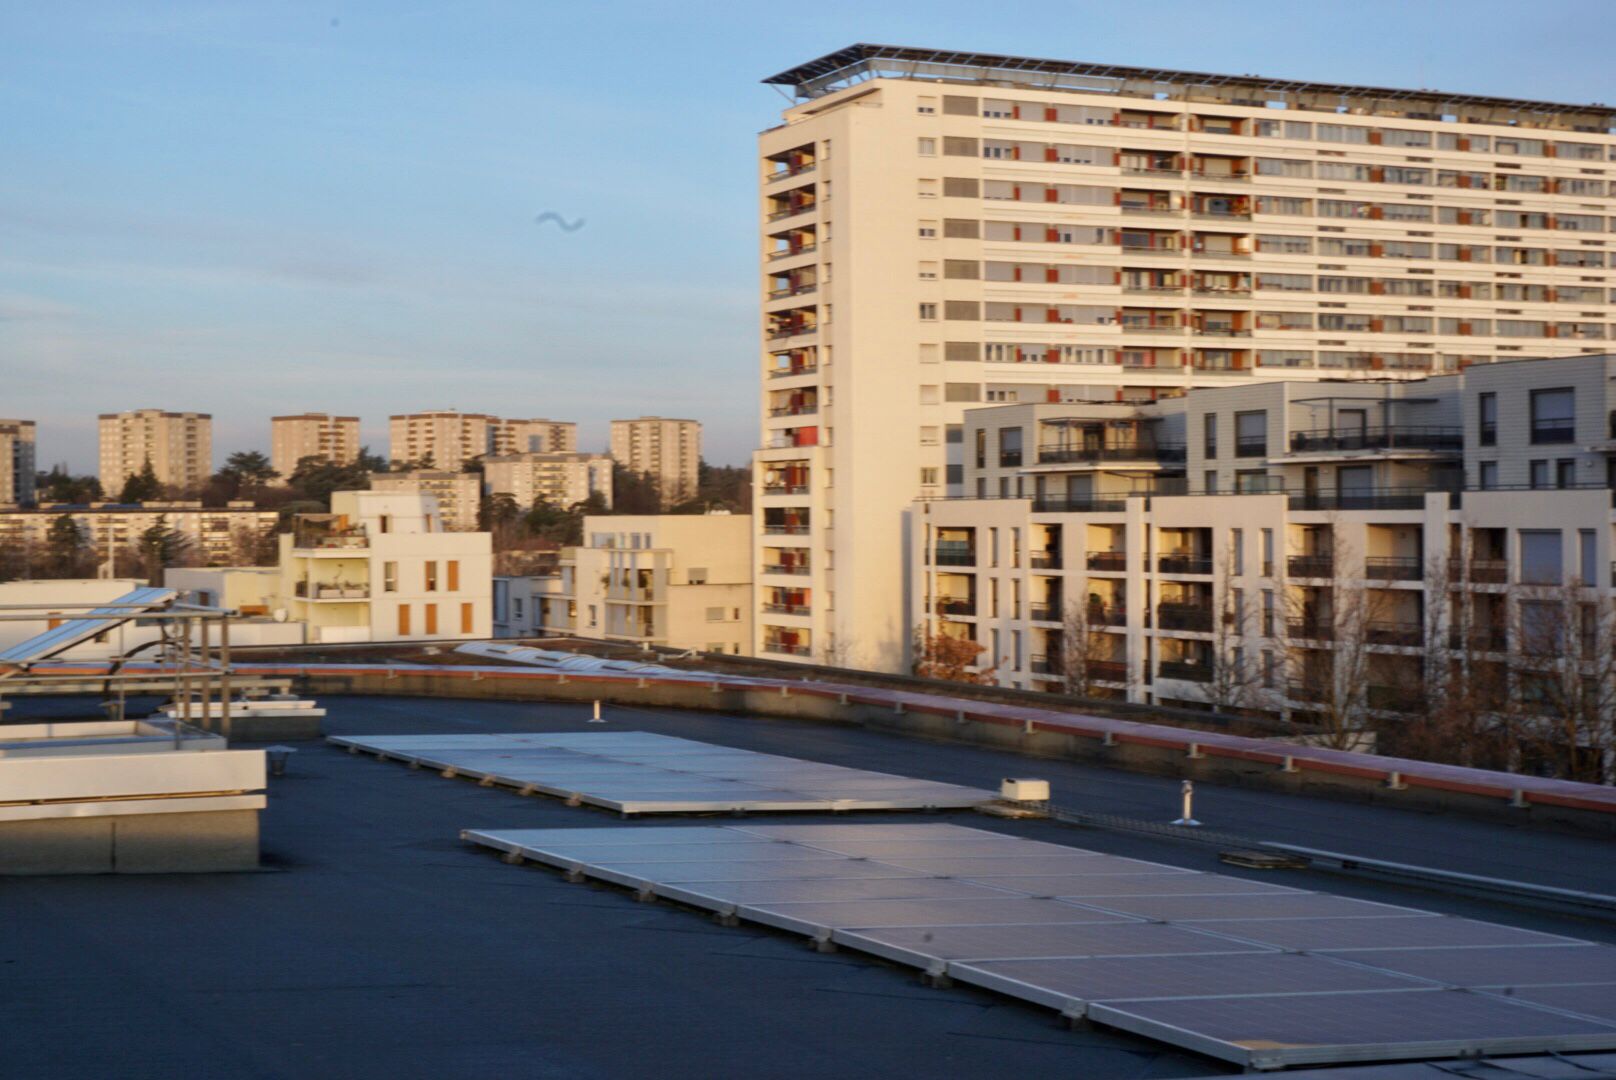 Vue d'un toit plat recouvert de panneaux solaires et, derrière, d'un quartier résidentiel dans la lumière du soir, avec des immeubles de grande hauteur.